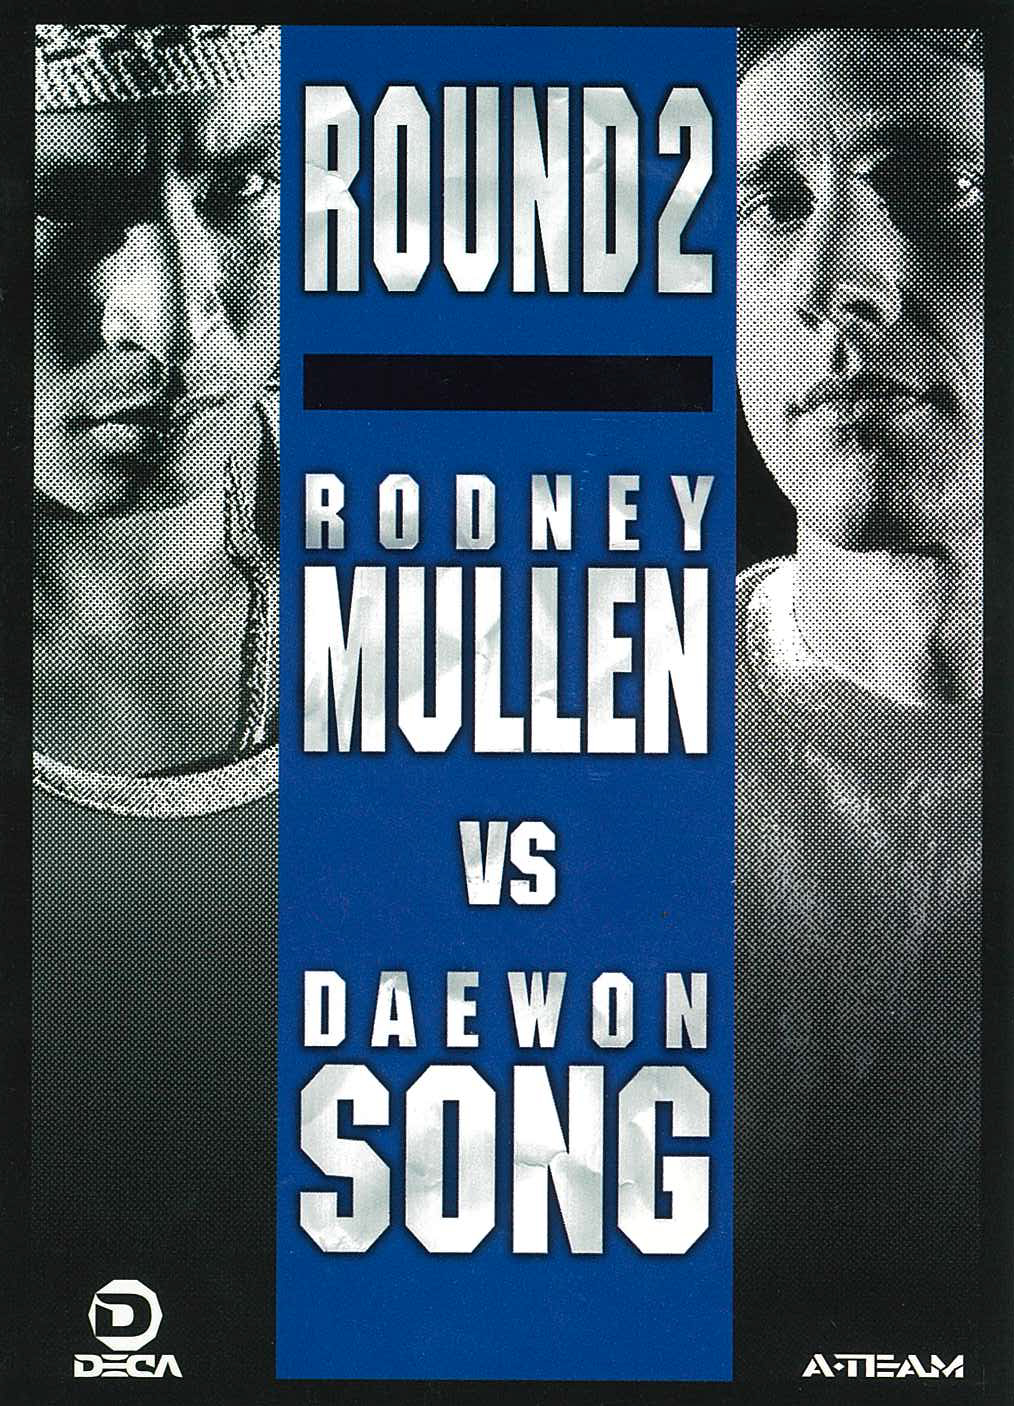 Rodney Mullen vs Daewon Song: Round 2 cover art